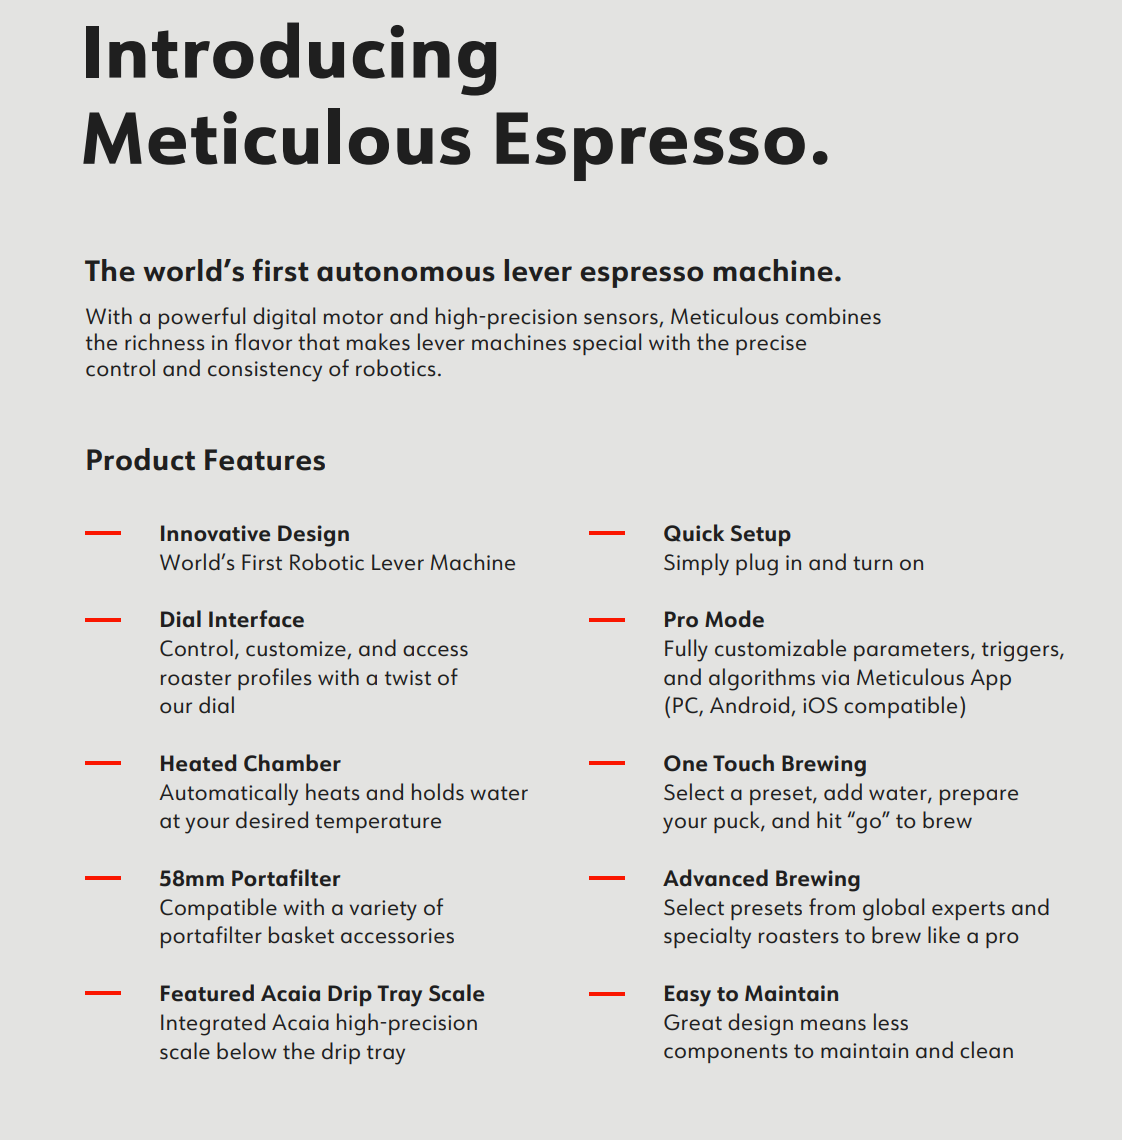 Meticulous Espresso